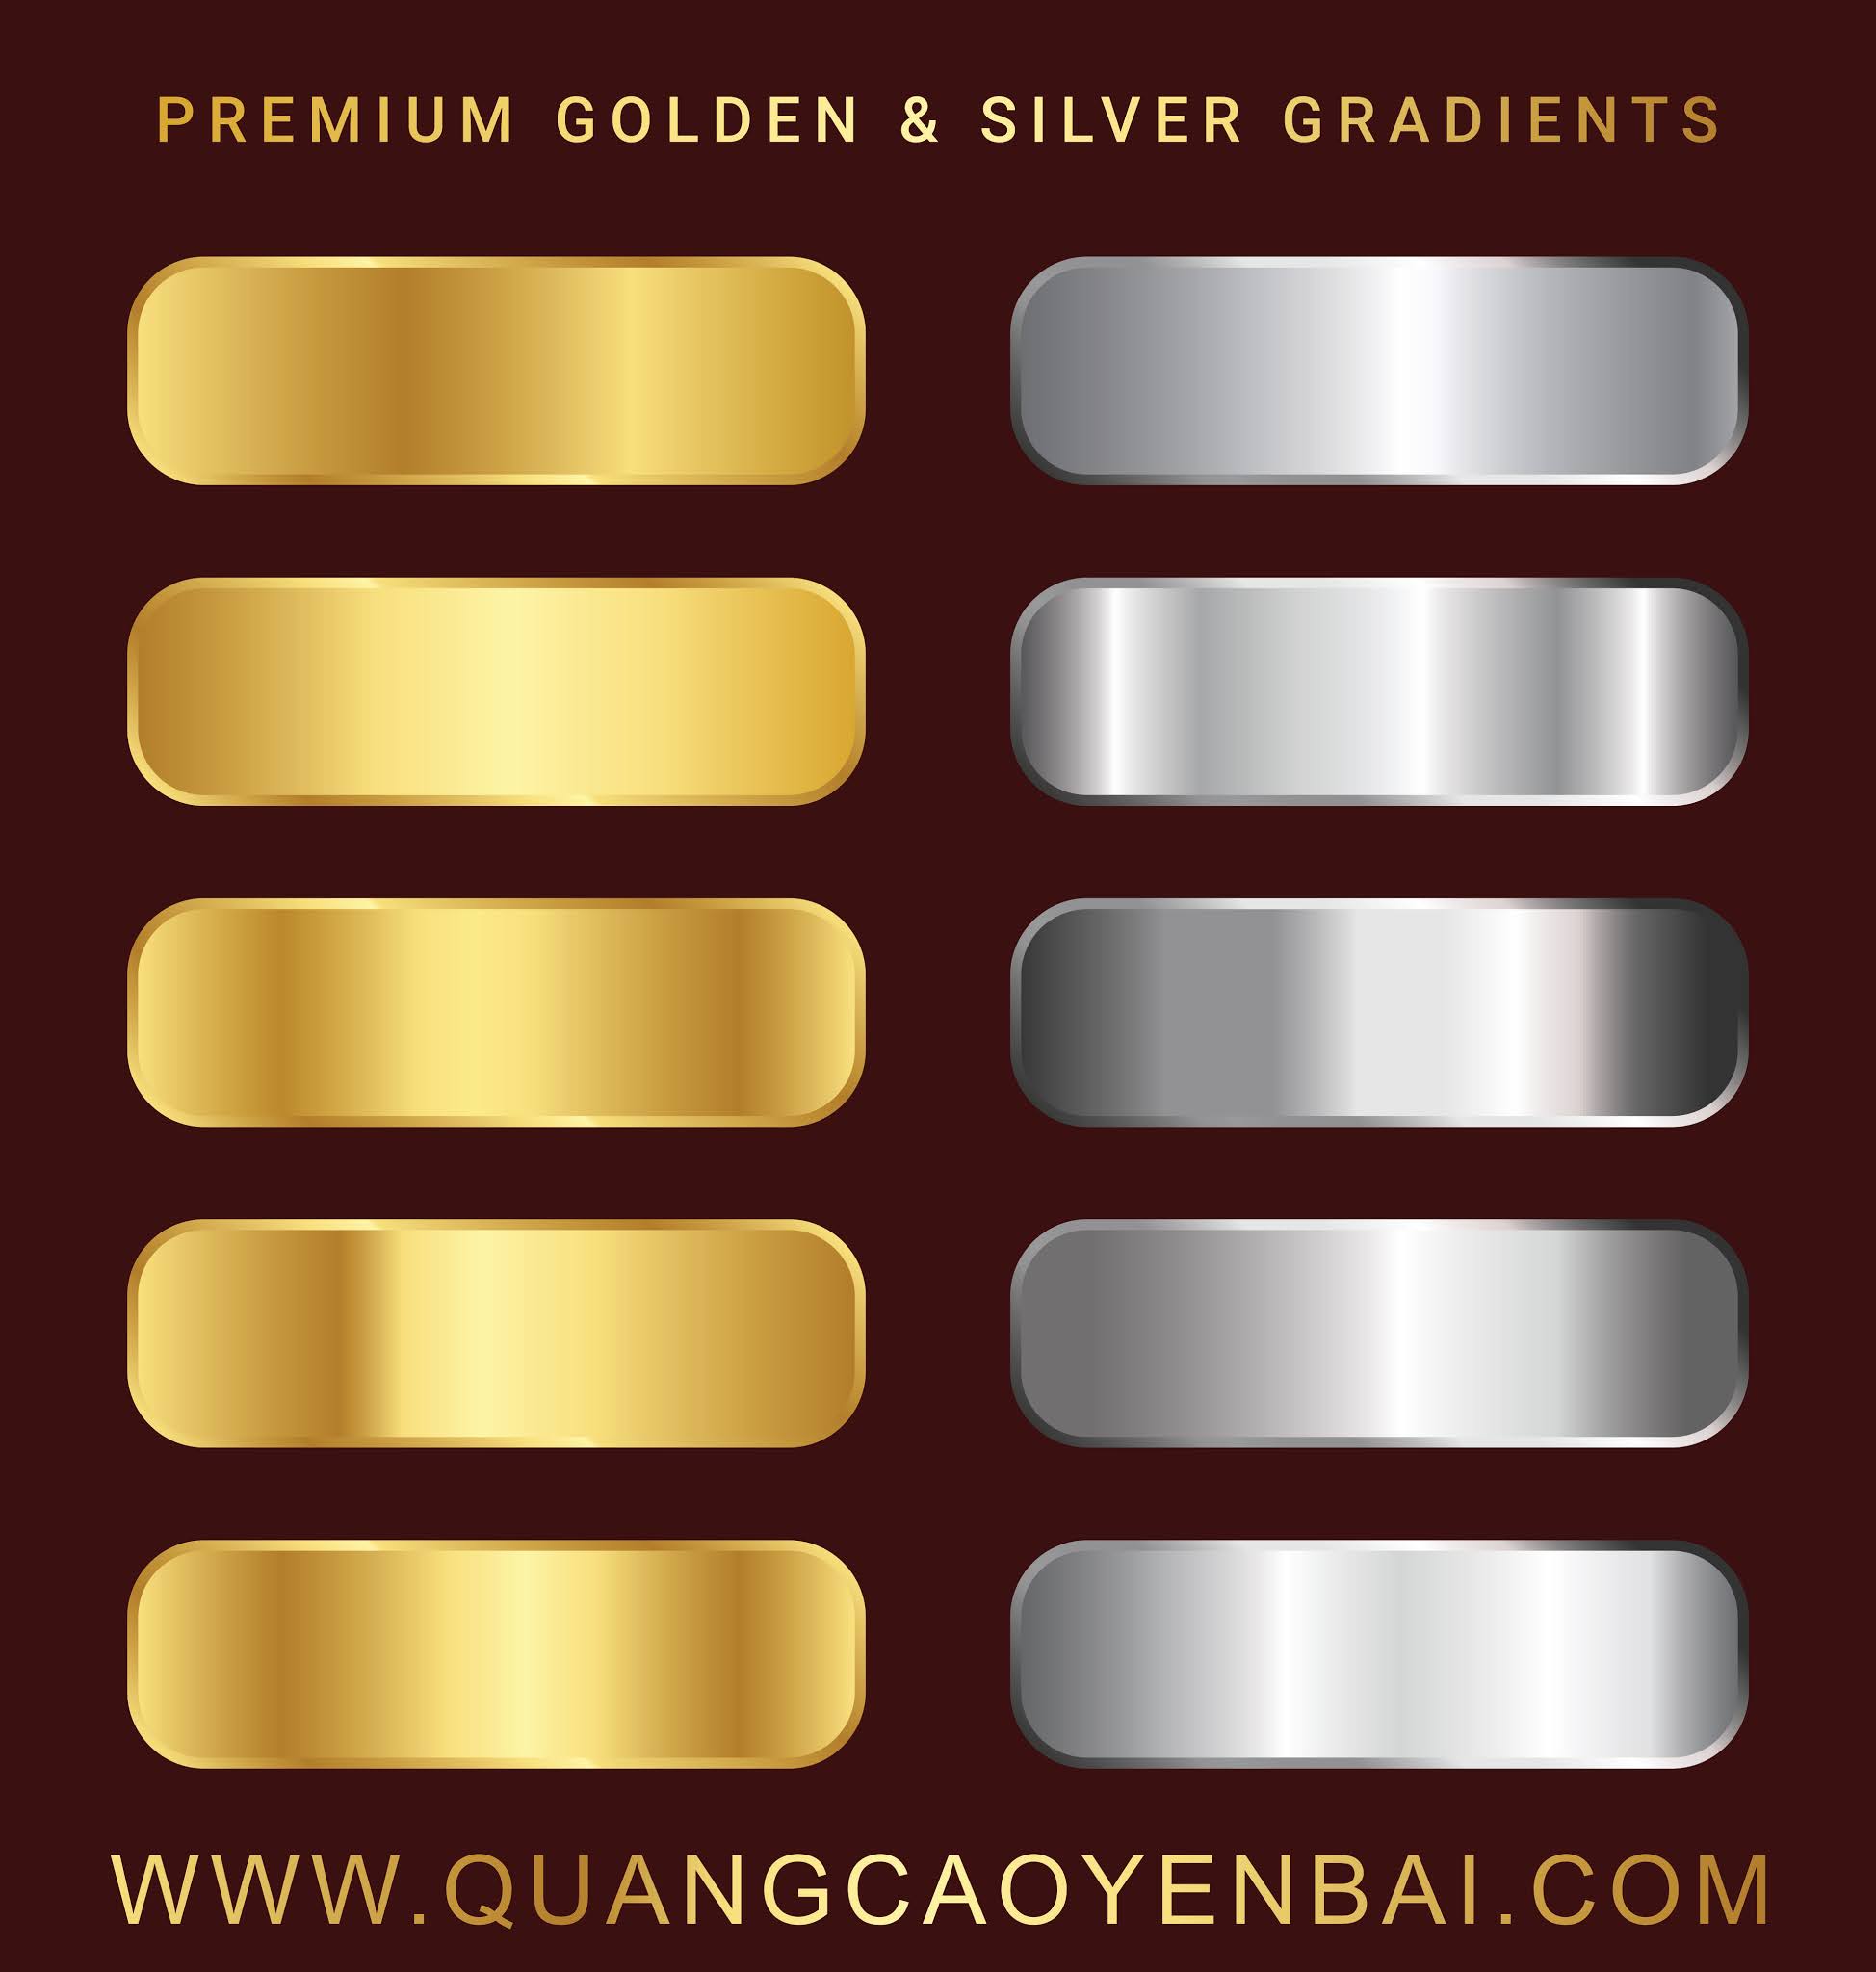 Hướng Dẫn Thiết Kế Chữ Có Hiệu Ứng Màu Golden  Sliver Trong Corel X7   Golden  Sliver Text Design  QuảngCáoYênBáiCom  Vector Photoshop Hình  ảnh Template 3Ddownload miễn phí 